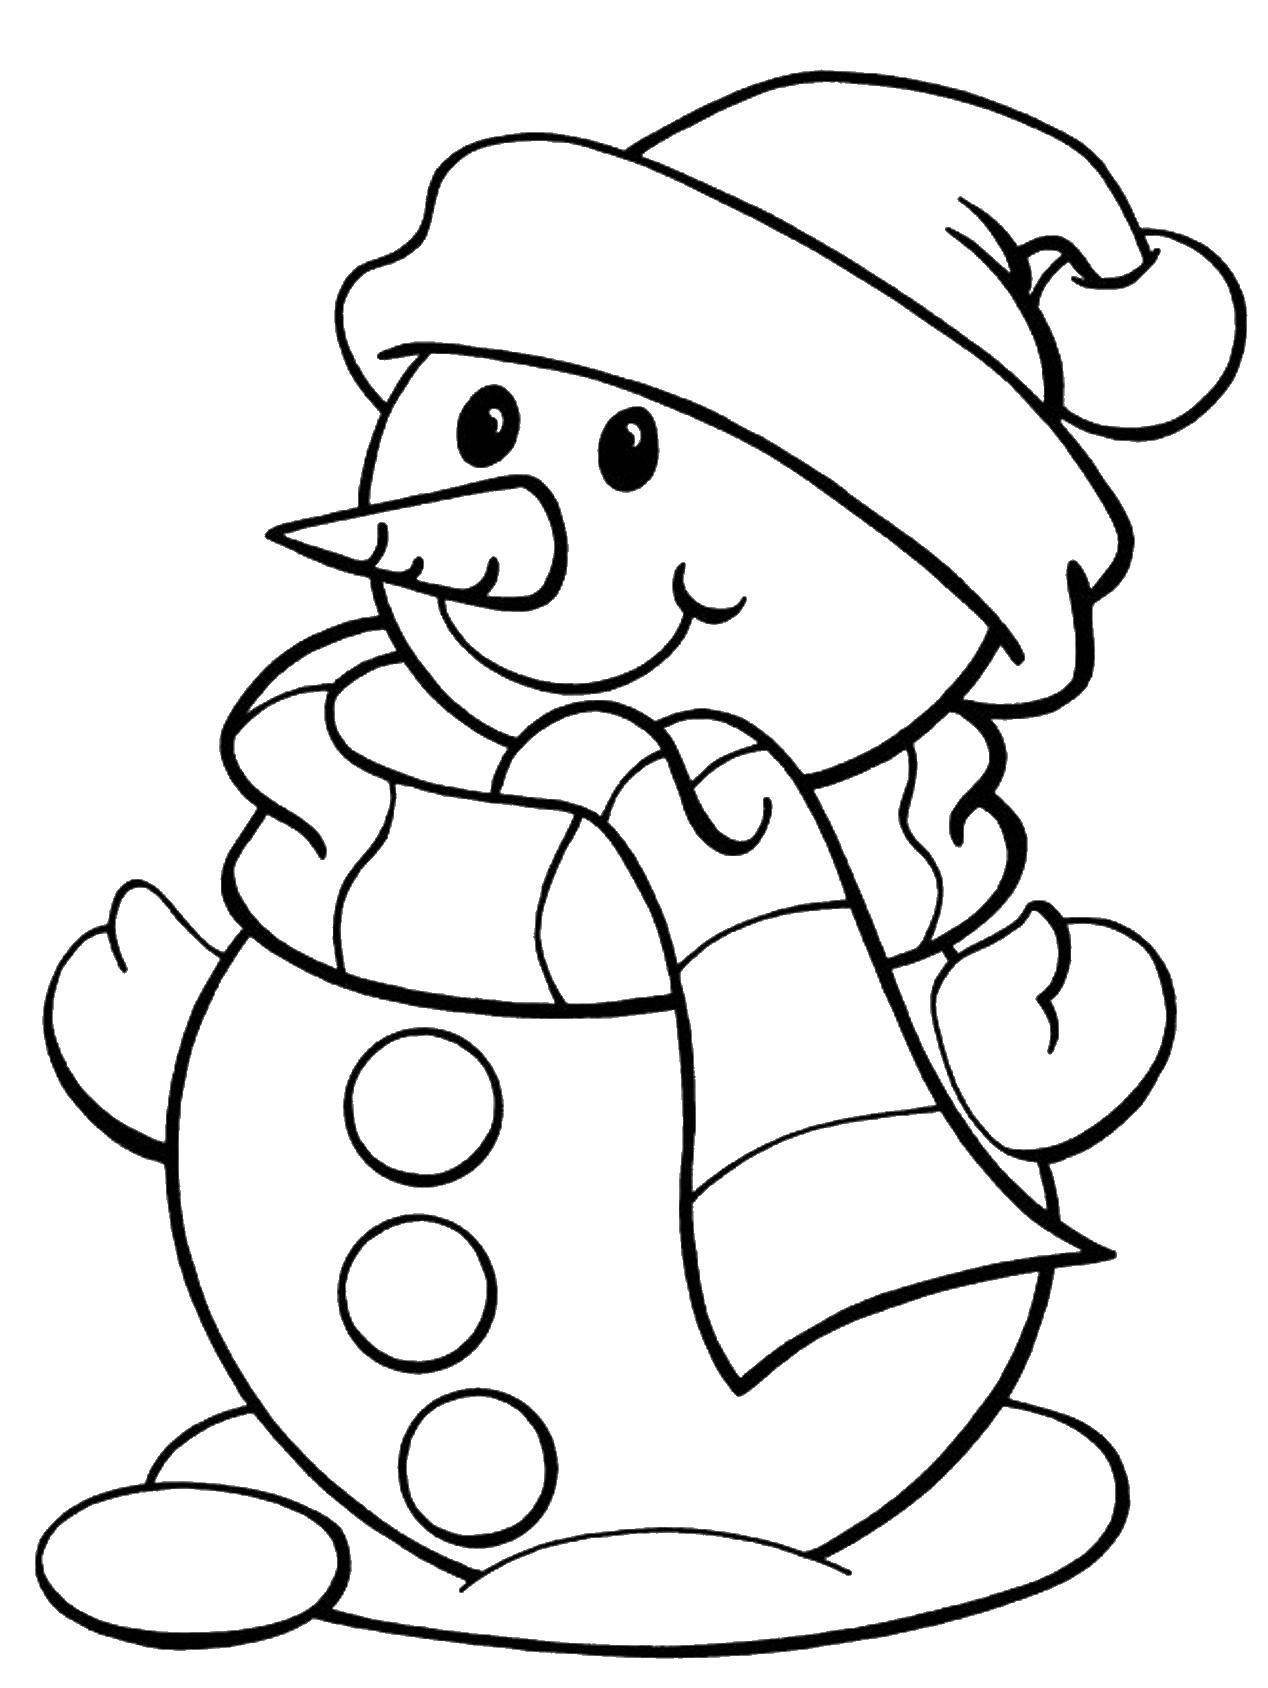 Розмальовки  Сніговик. Завантажити розмальовку зима, сніг, сніговики.  Роздрукувати ,розмальовки зима,